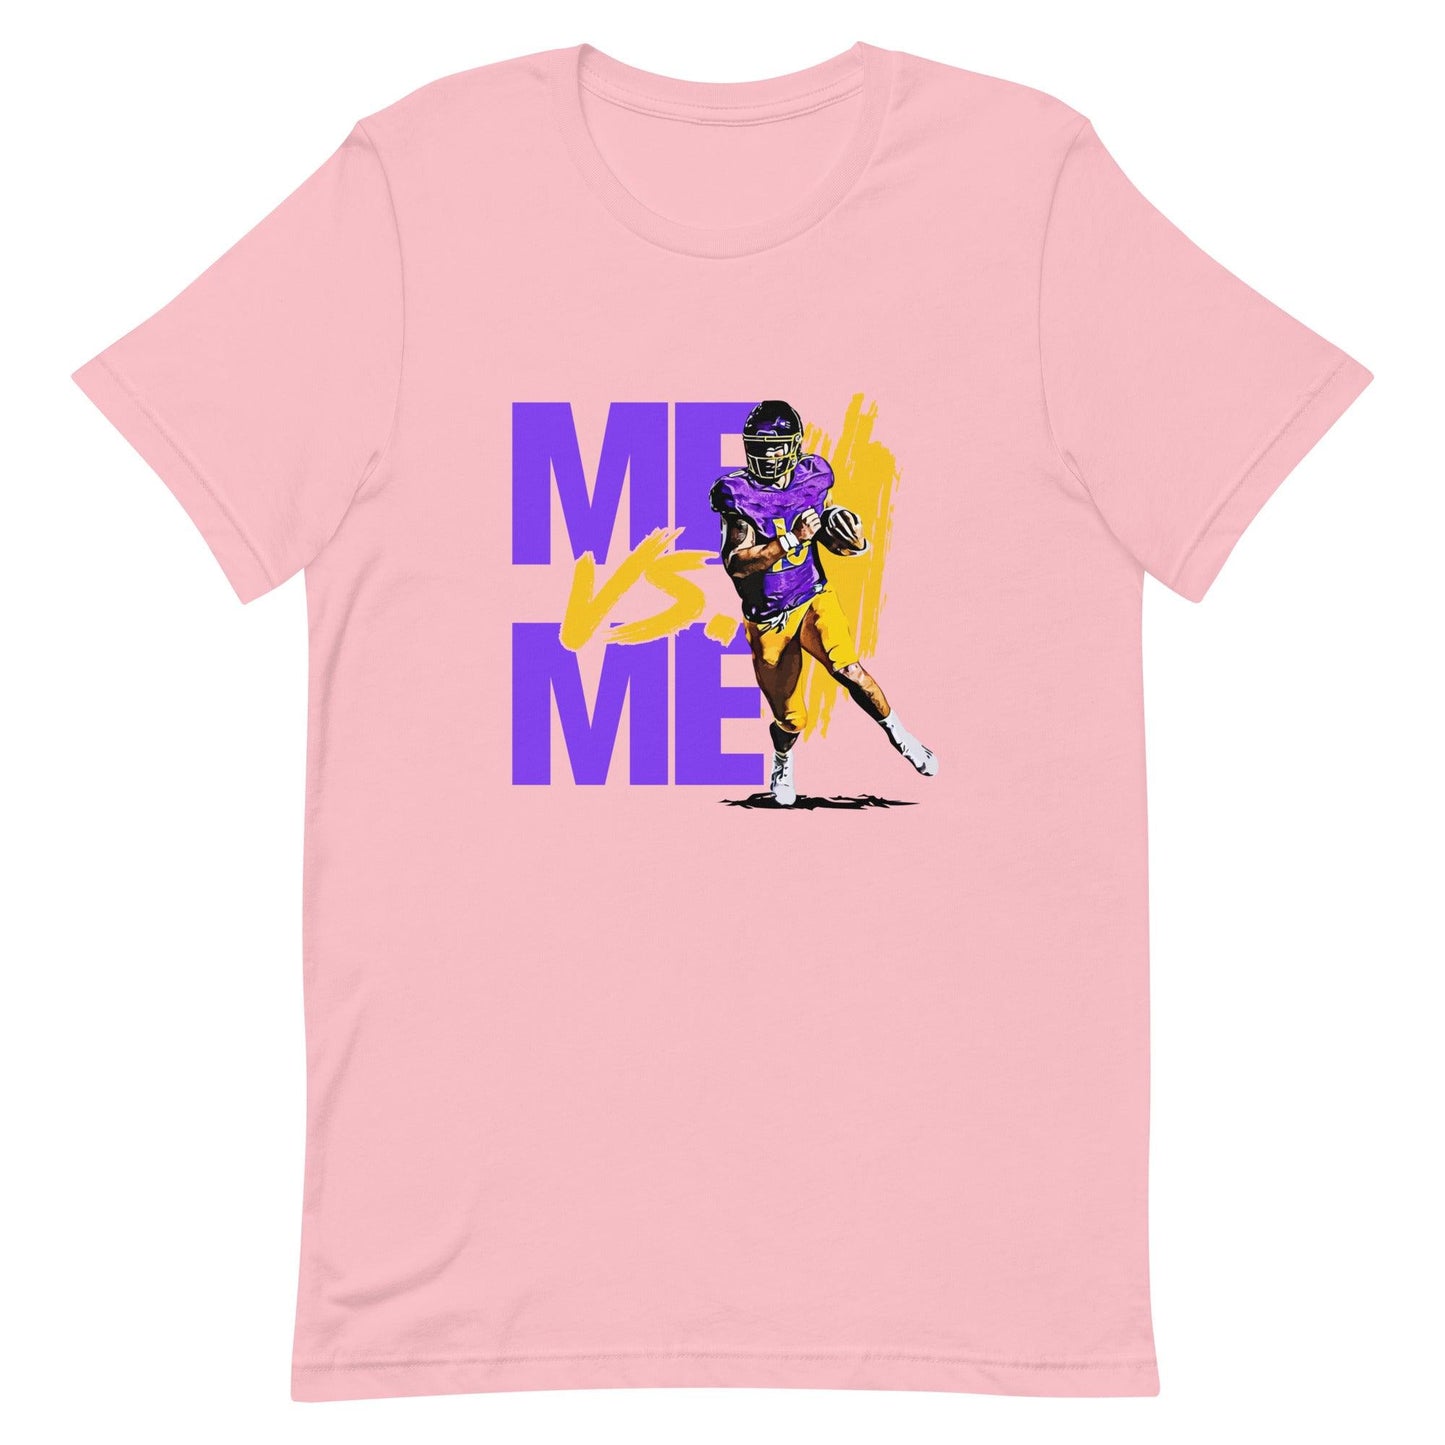 Mason Garcia "Me Vs. Me" t-shirt - Fan Arch